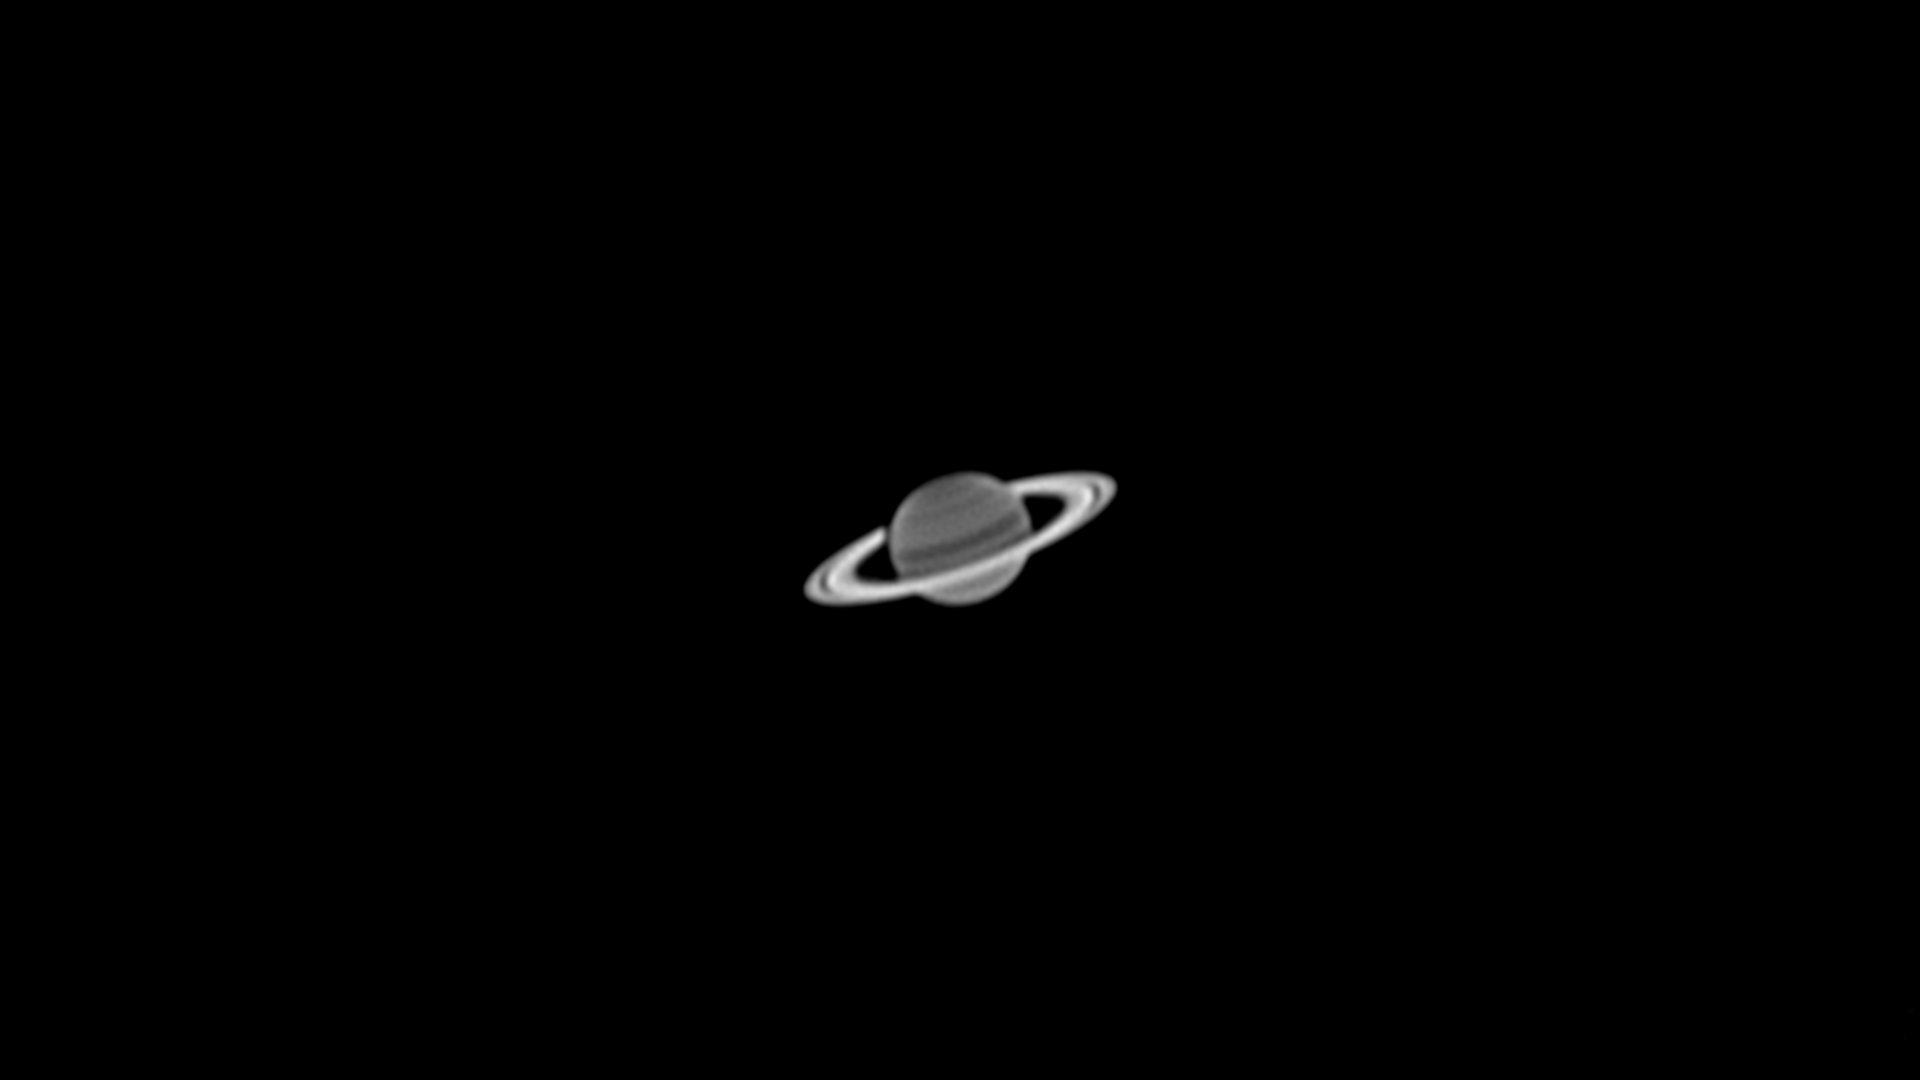 Saturne en UV le 26 aout au soir